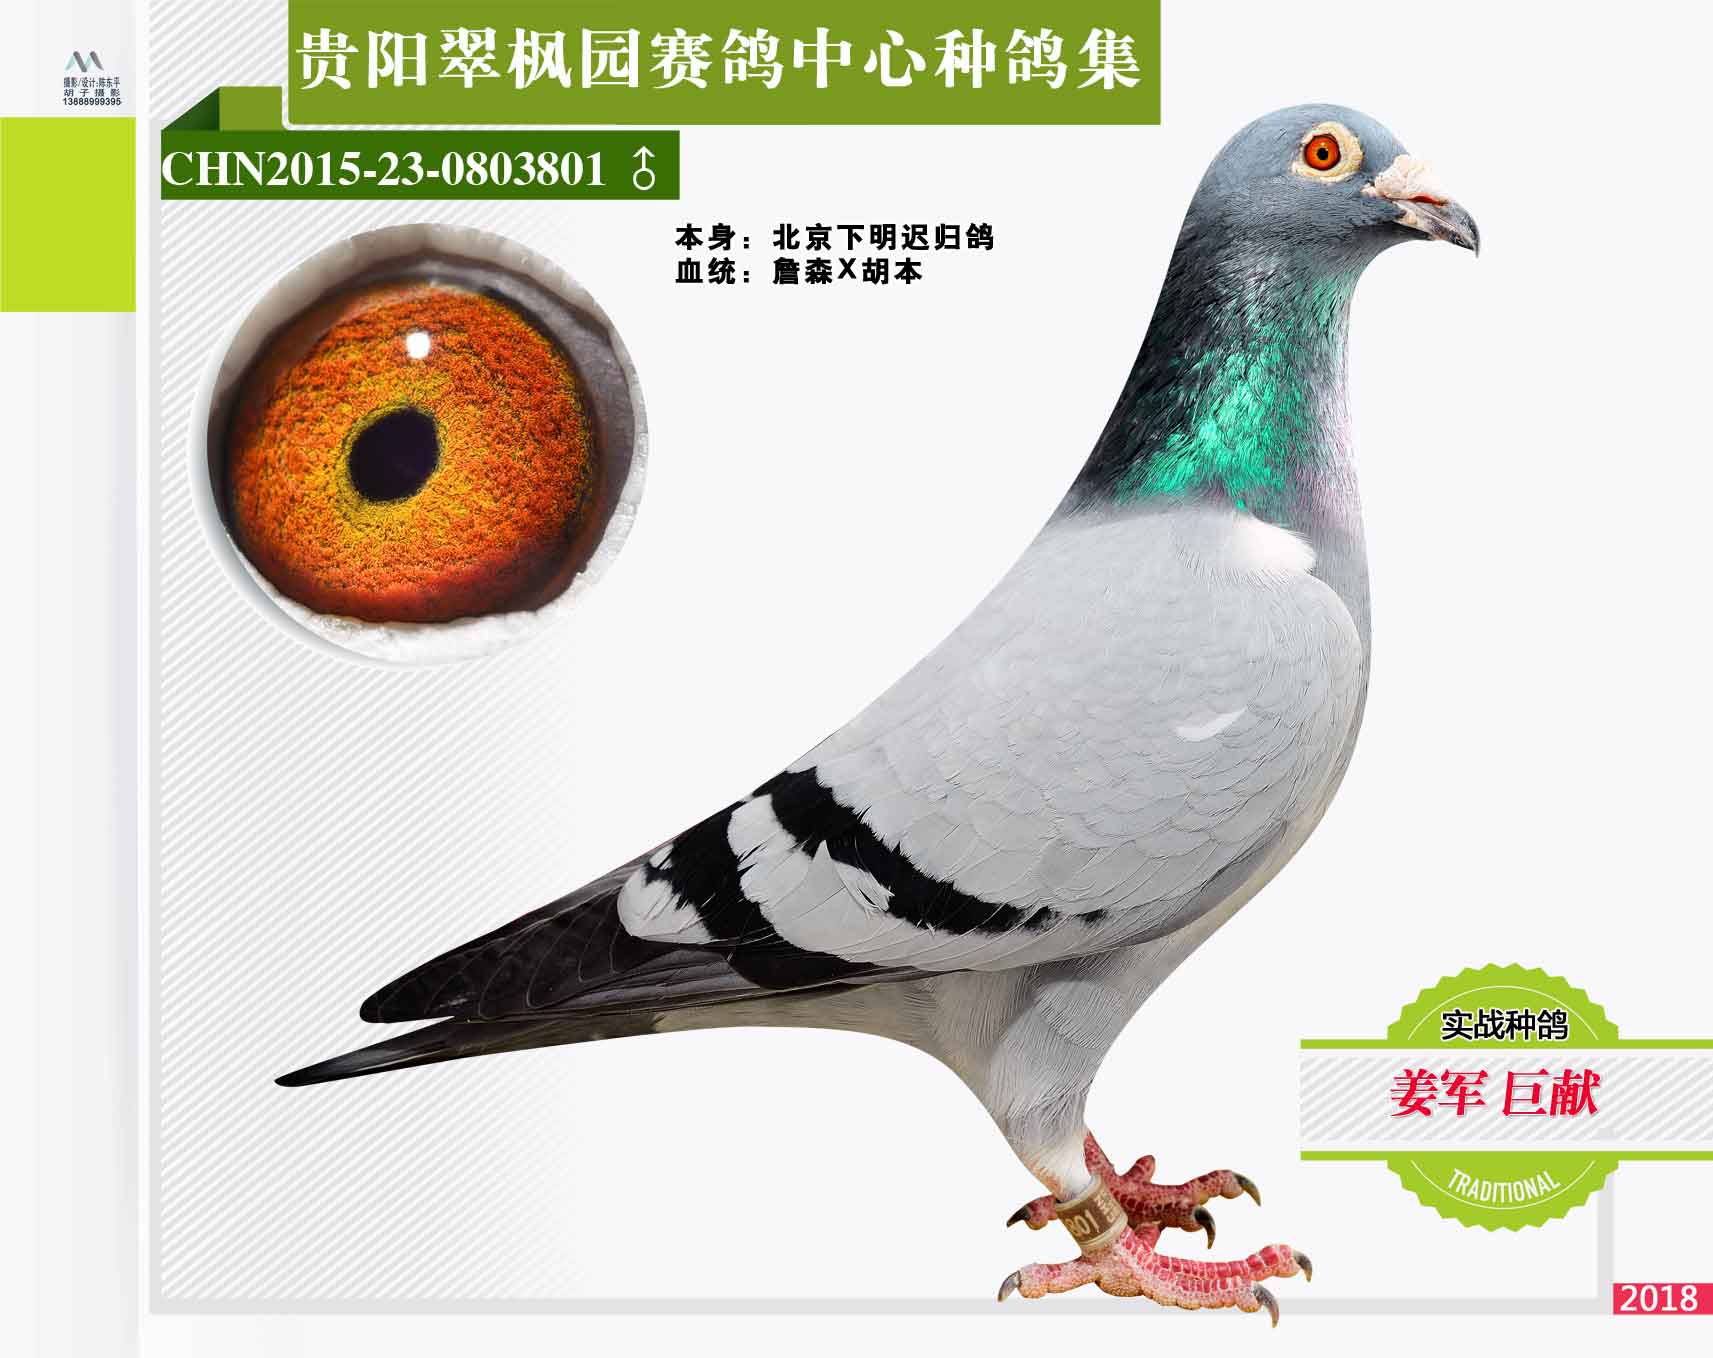 翠枫园赛鸽中心种鸽拍卖专集照片欣赏(二)